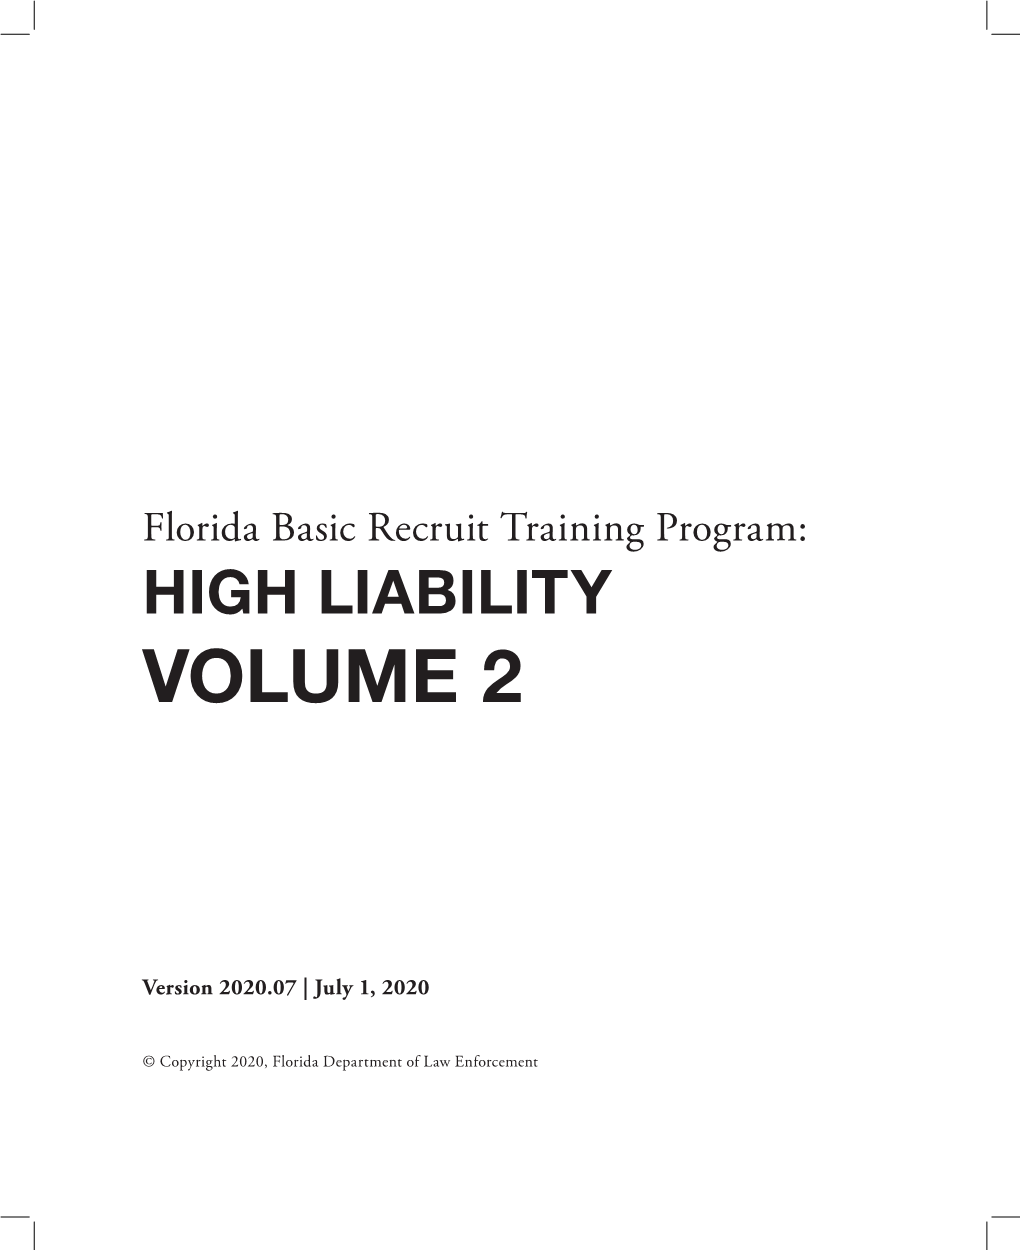 High Liability Volume 2